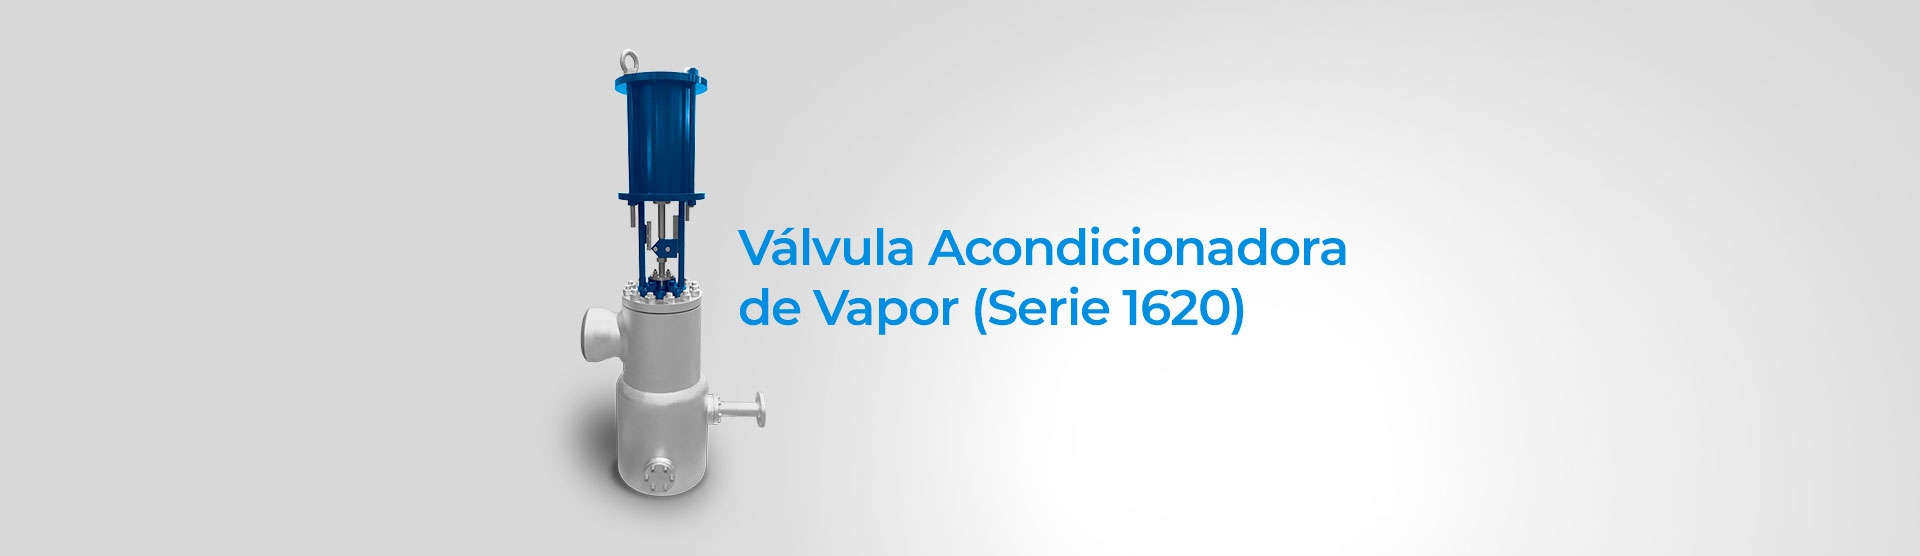 Válvula Acondicionadora de Vapor (Serie 1620)